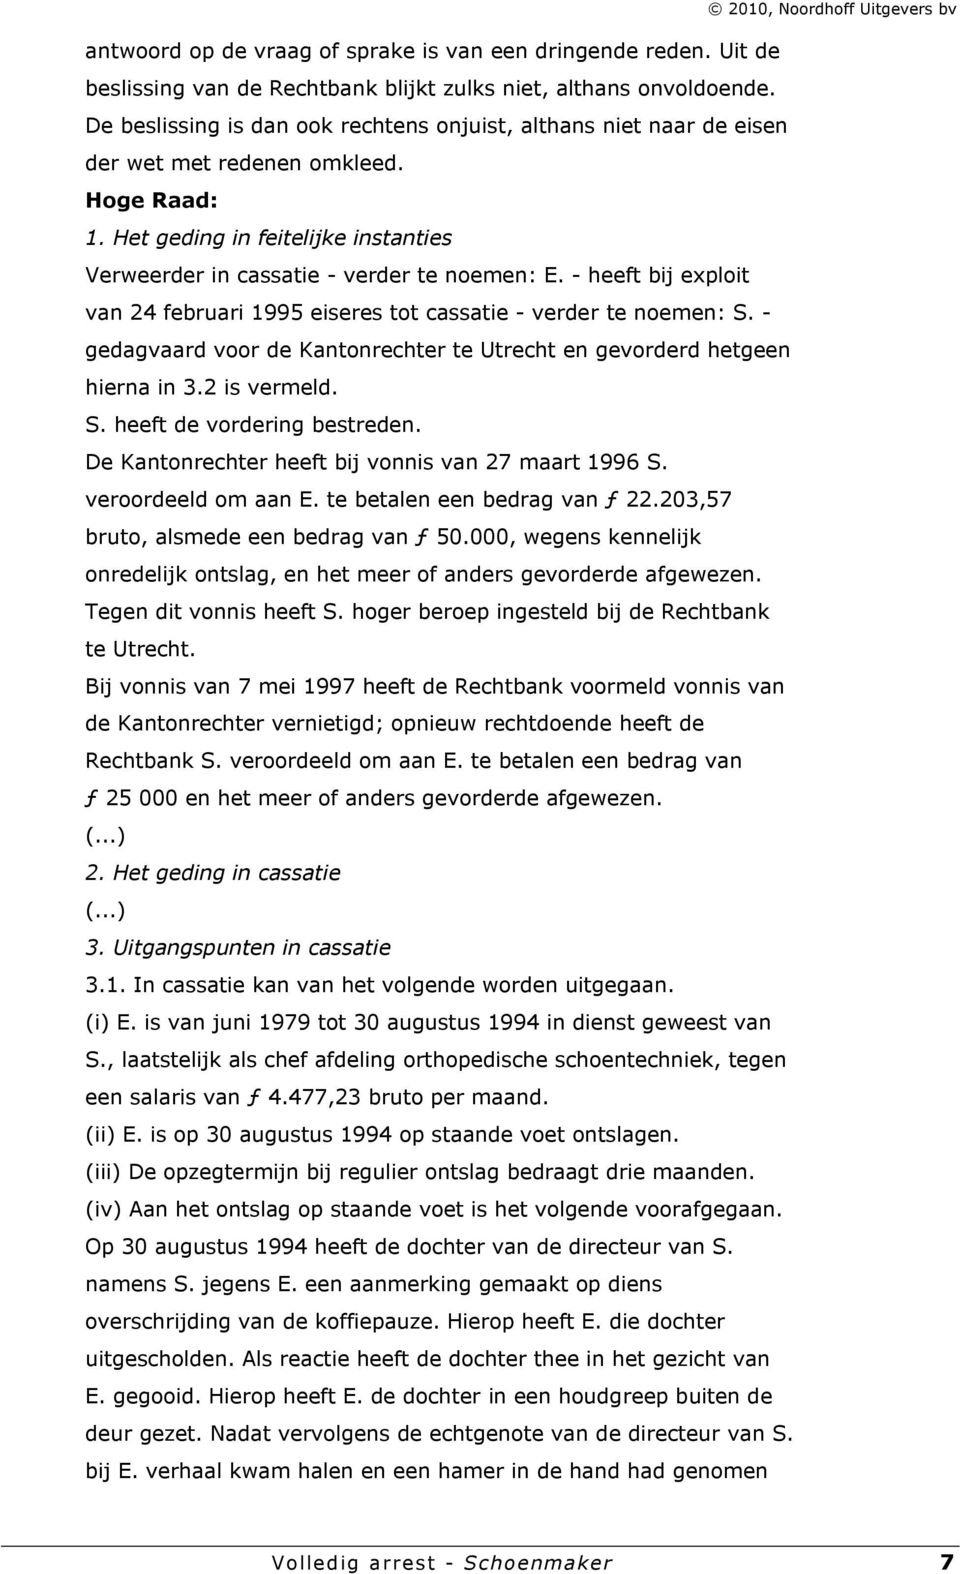 - heeft bij exploit van 24 februari 1995 eiseres tot cassatie - verder te noemen: S. - gedagvaard voor de Kantonrechter te Utrecht en gevorderd hetgeen hierna in 3.2 is vermeld. S. heeft de vordering bestreden.